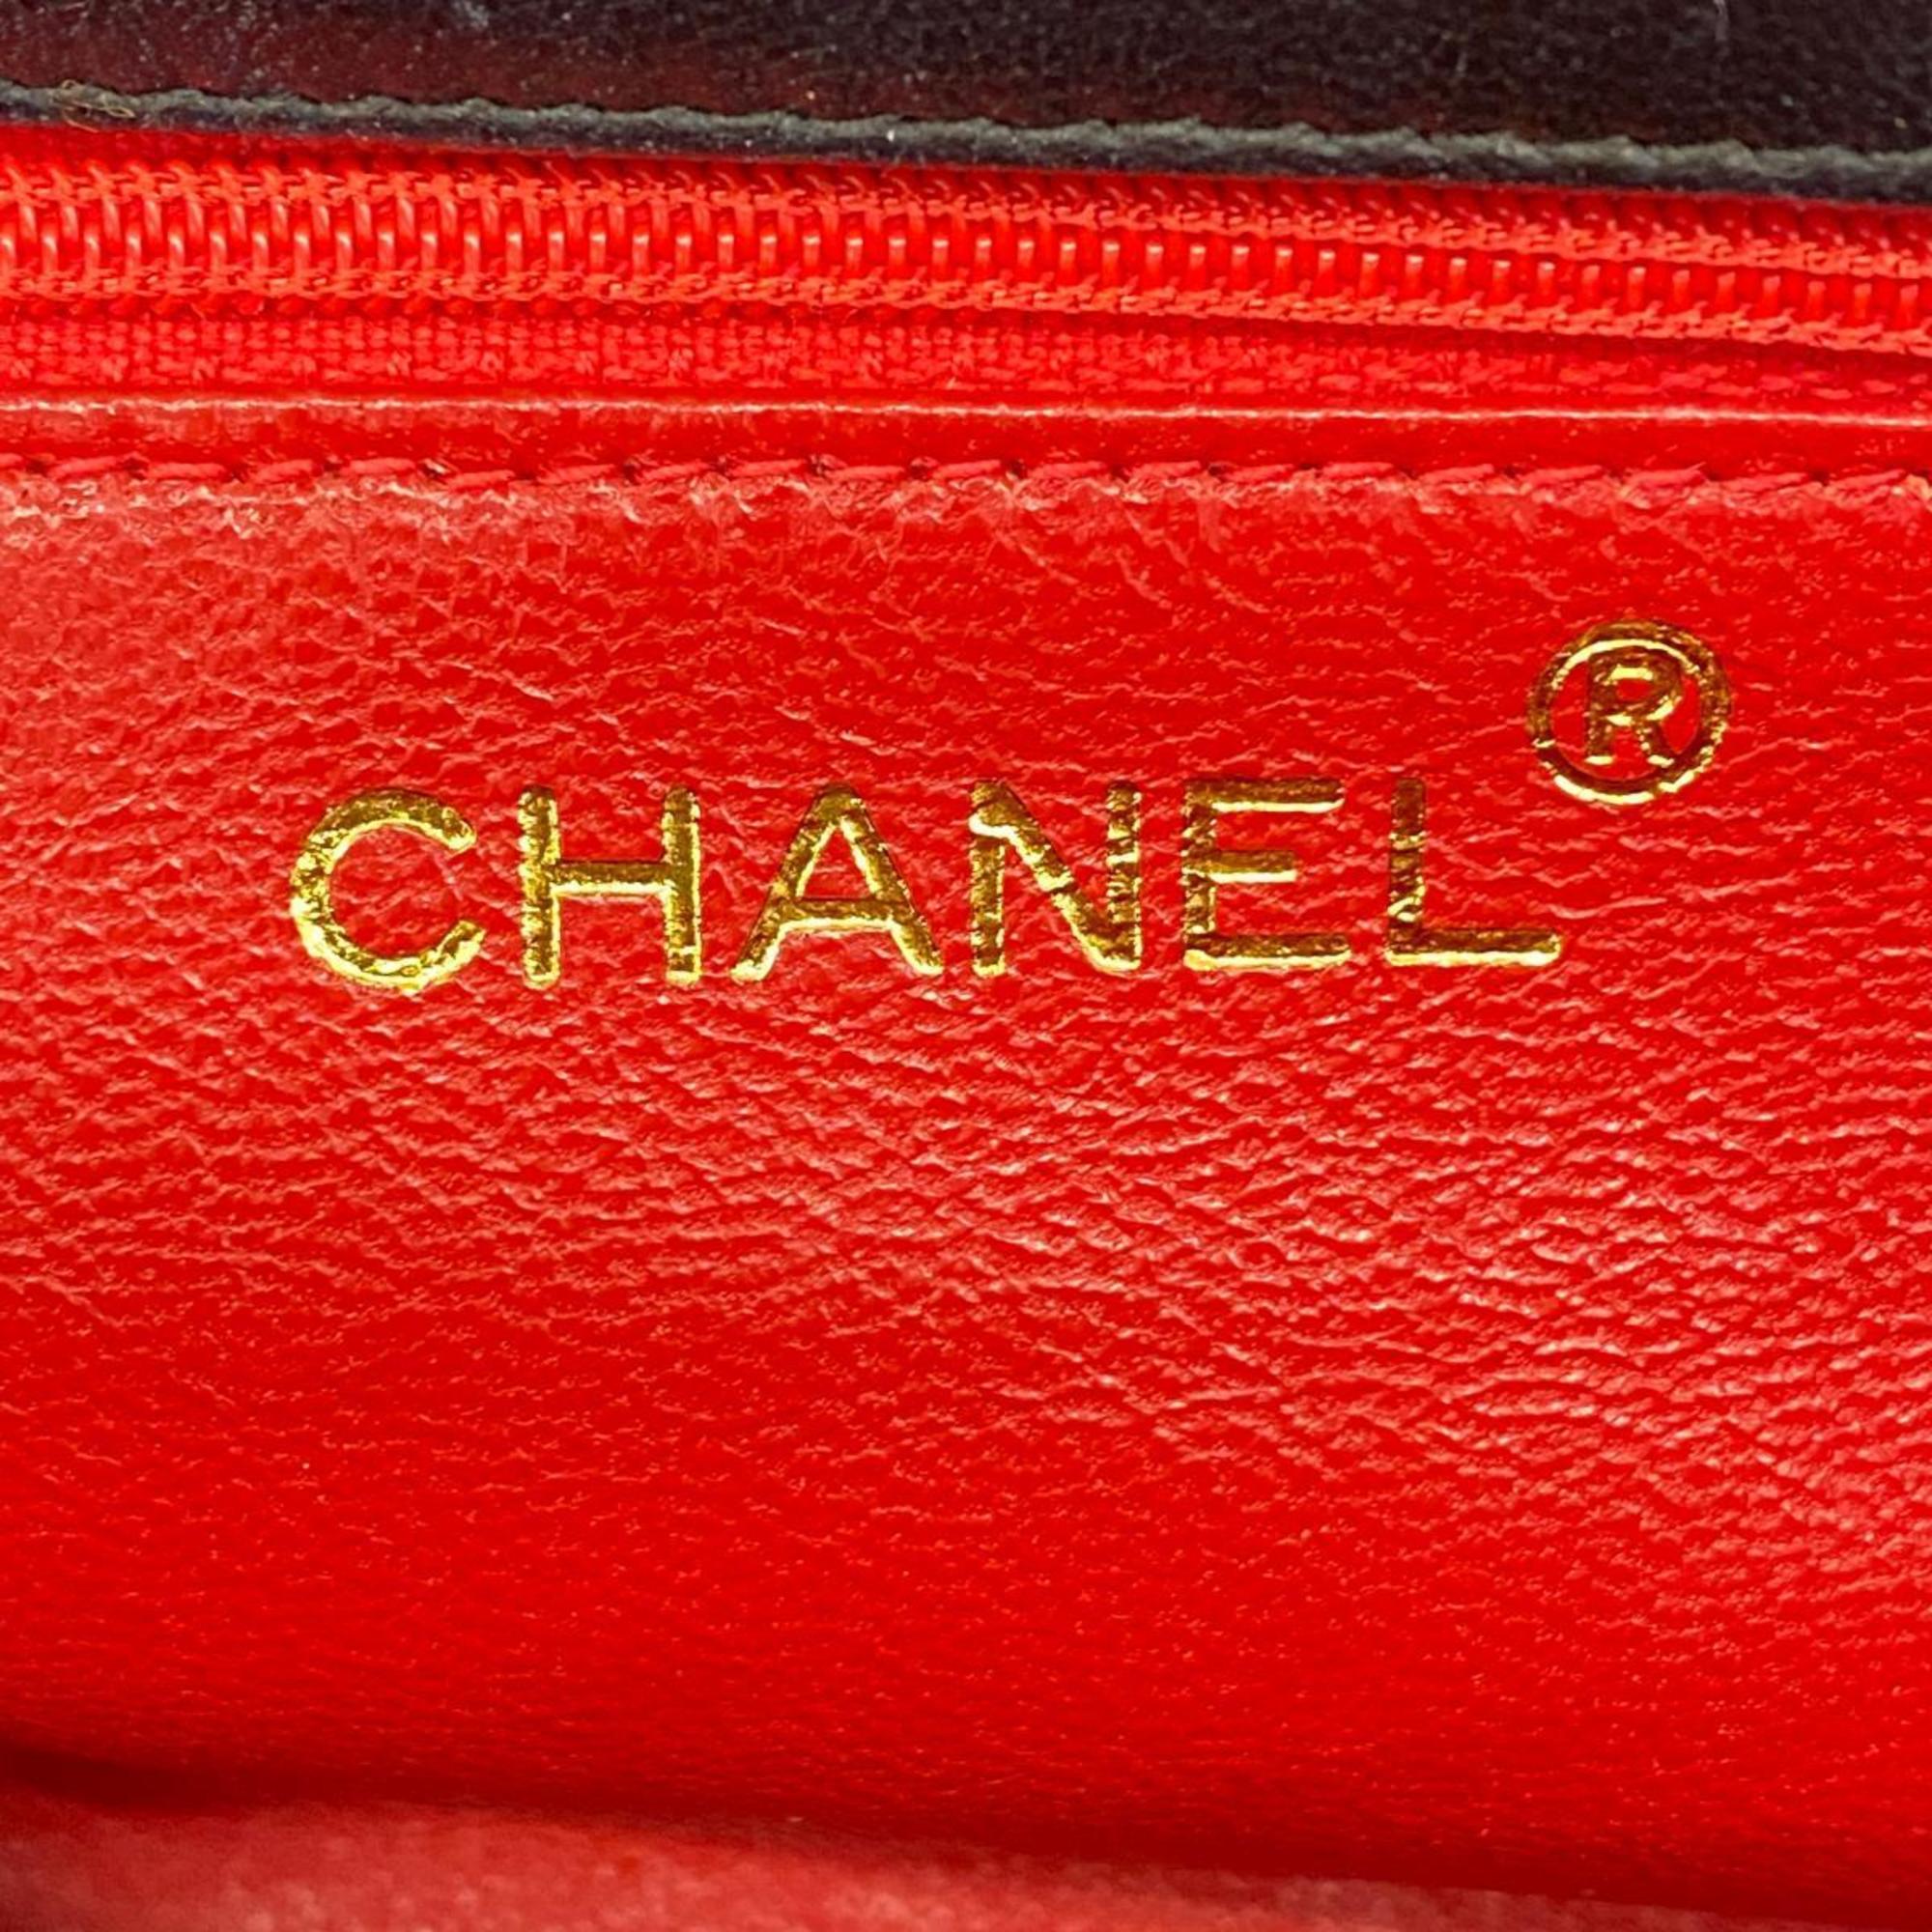 シャネル(Chanel) シャネル ショルダーバッグ チェーンショルダー サテン ブラック   レディース